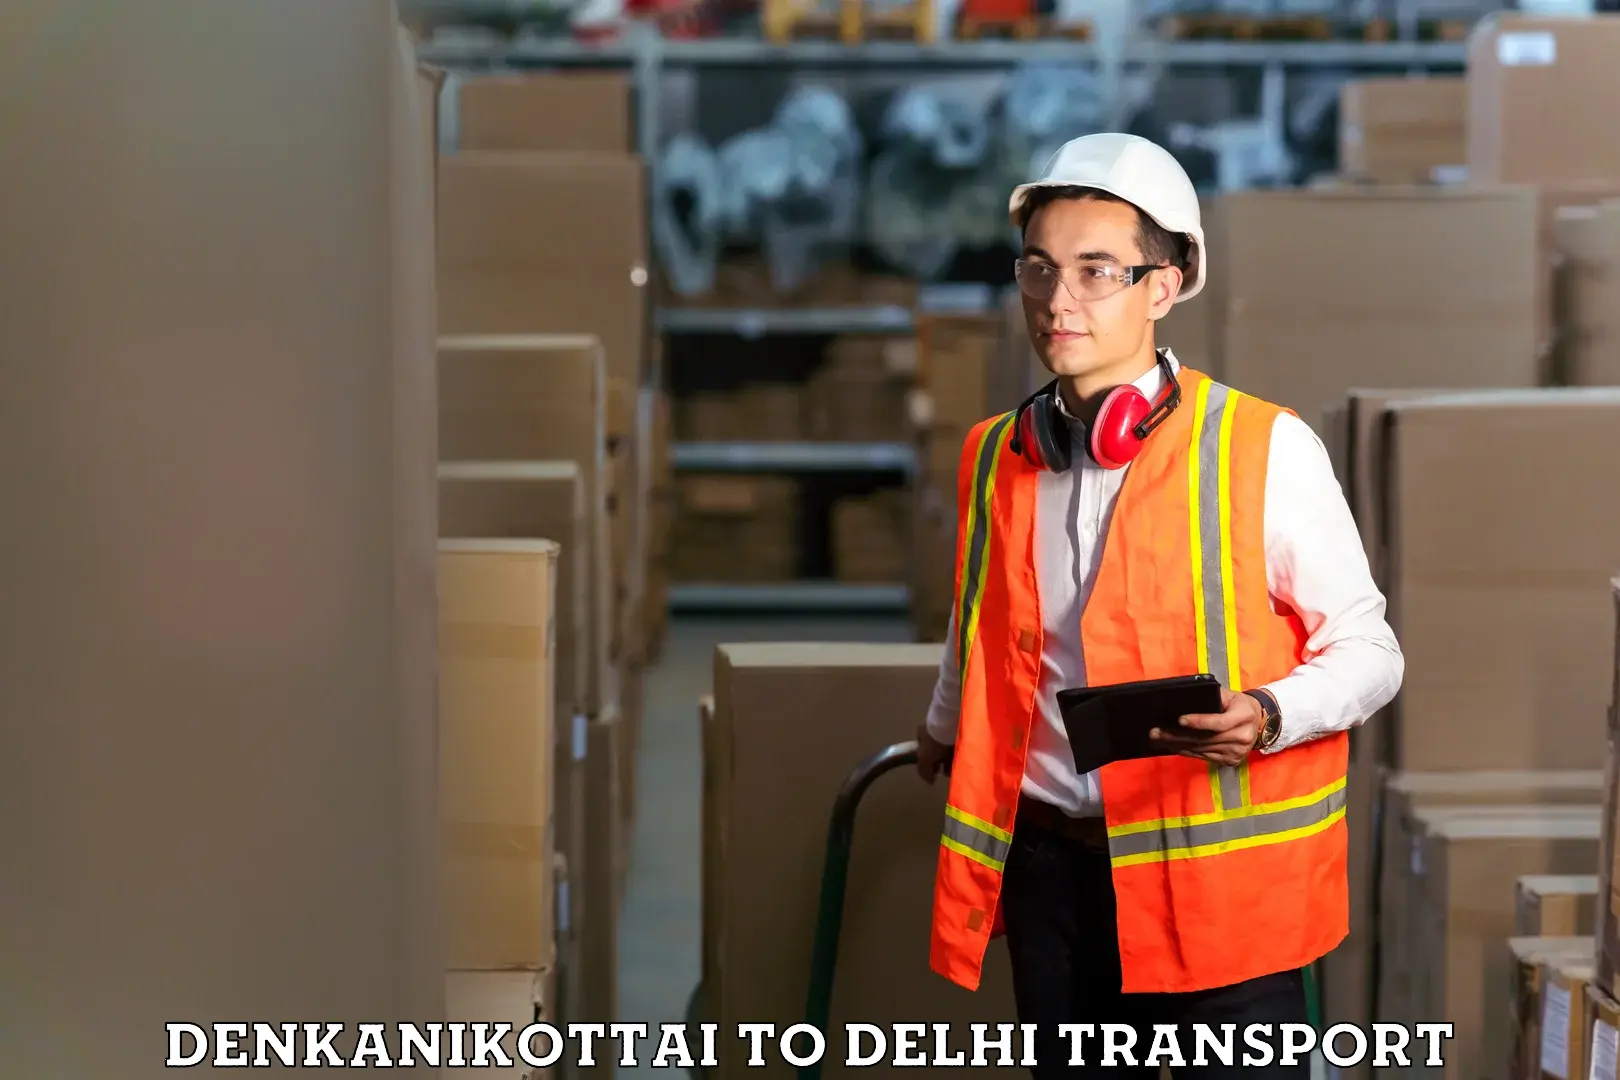 Interstate transport services Denkanikottai to NIT Delhi